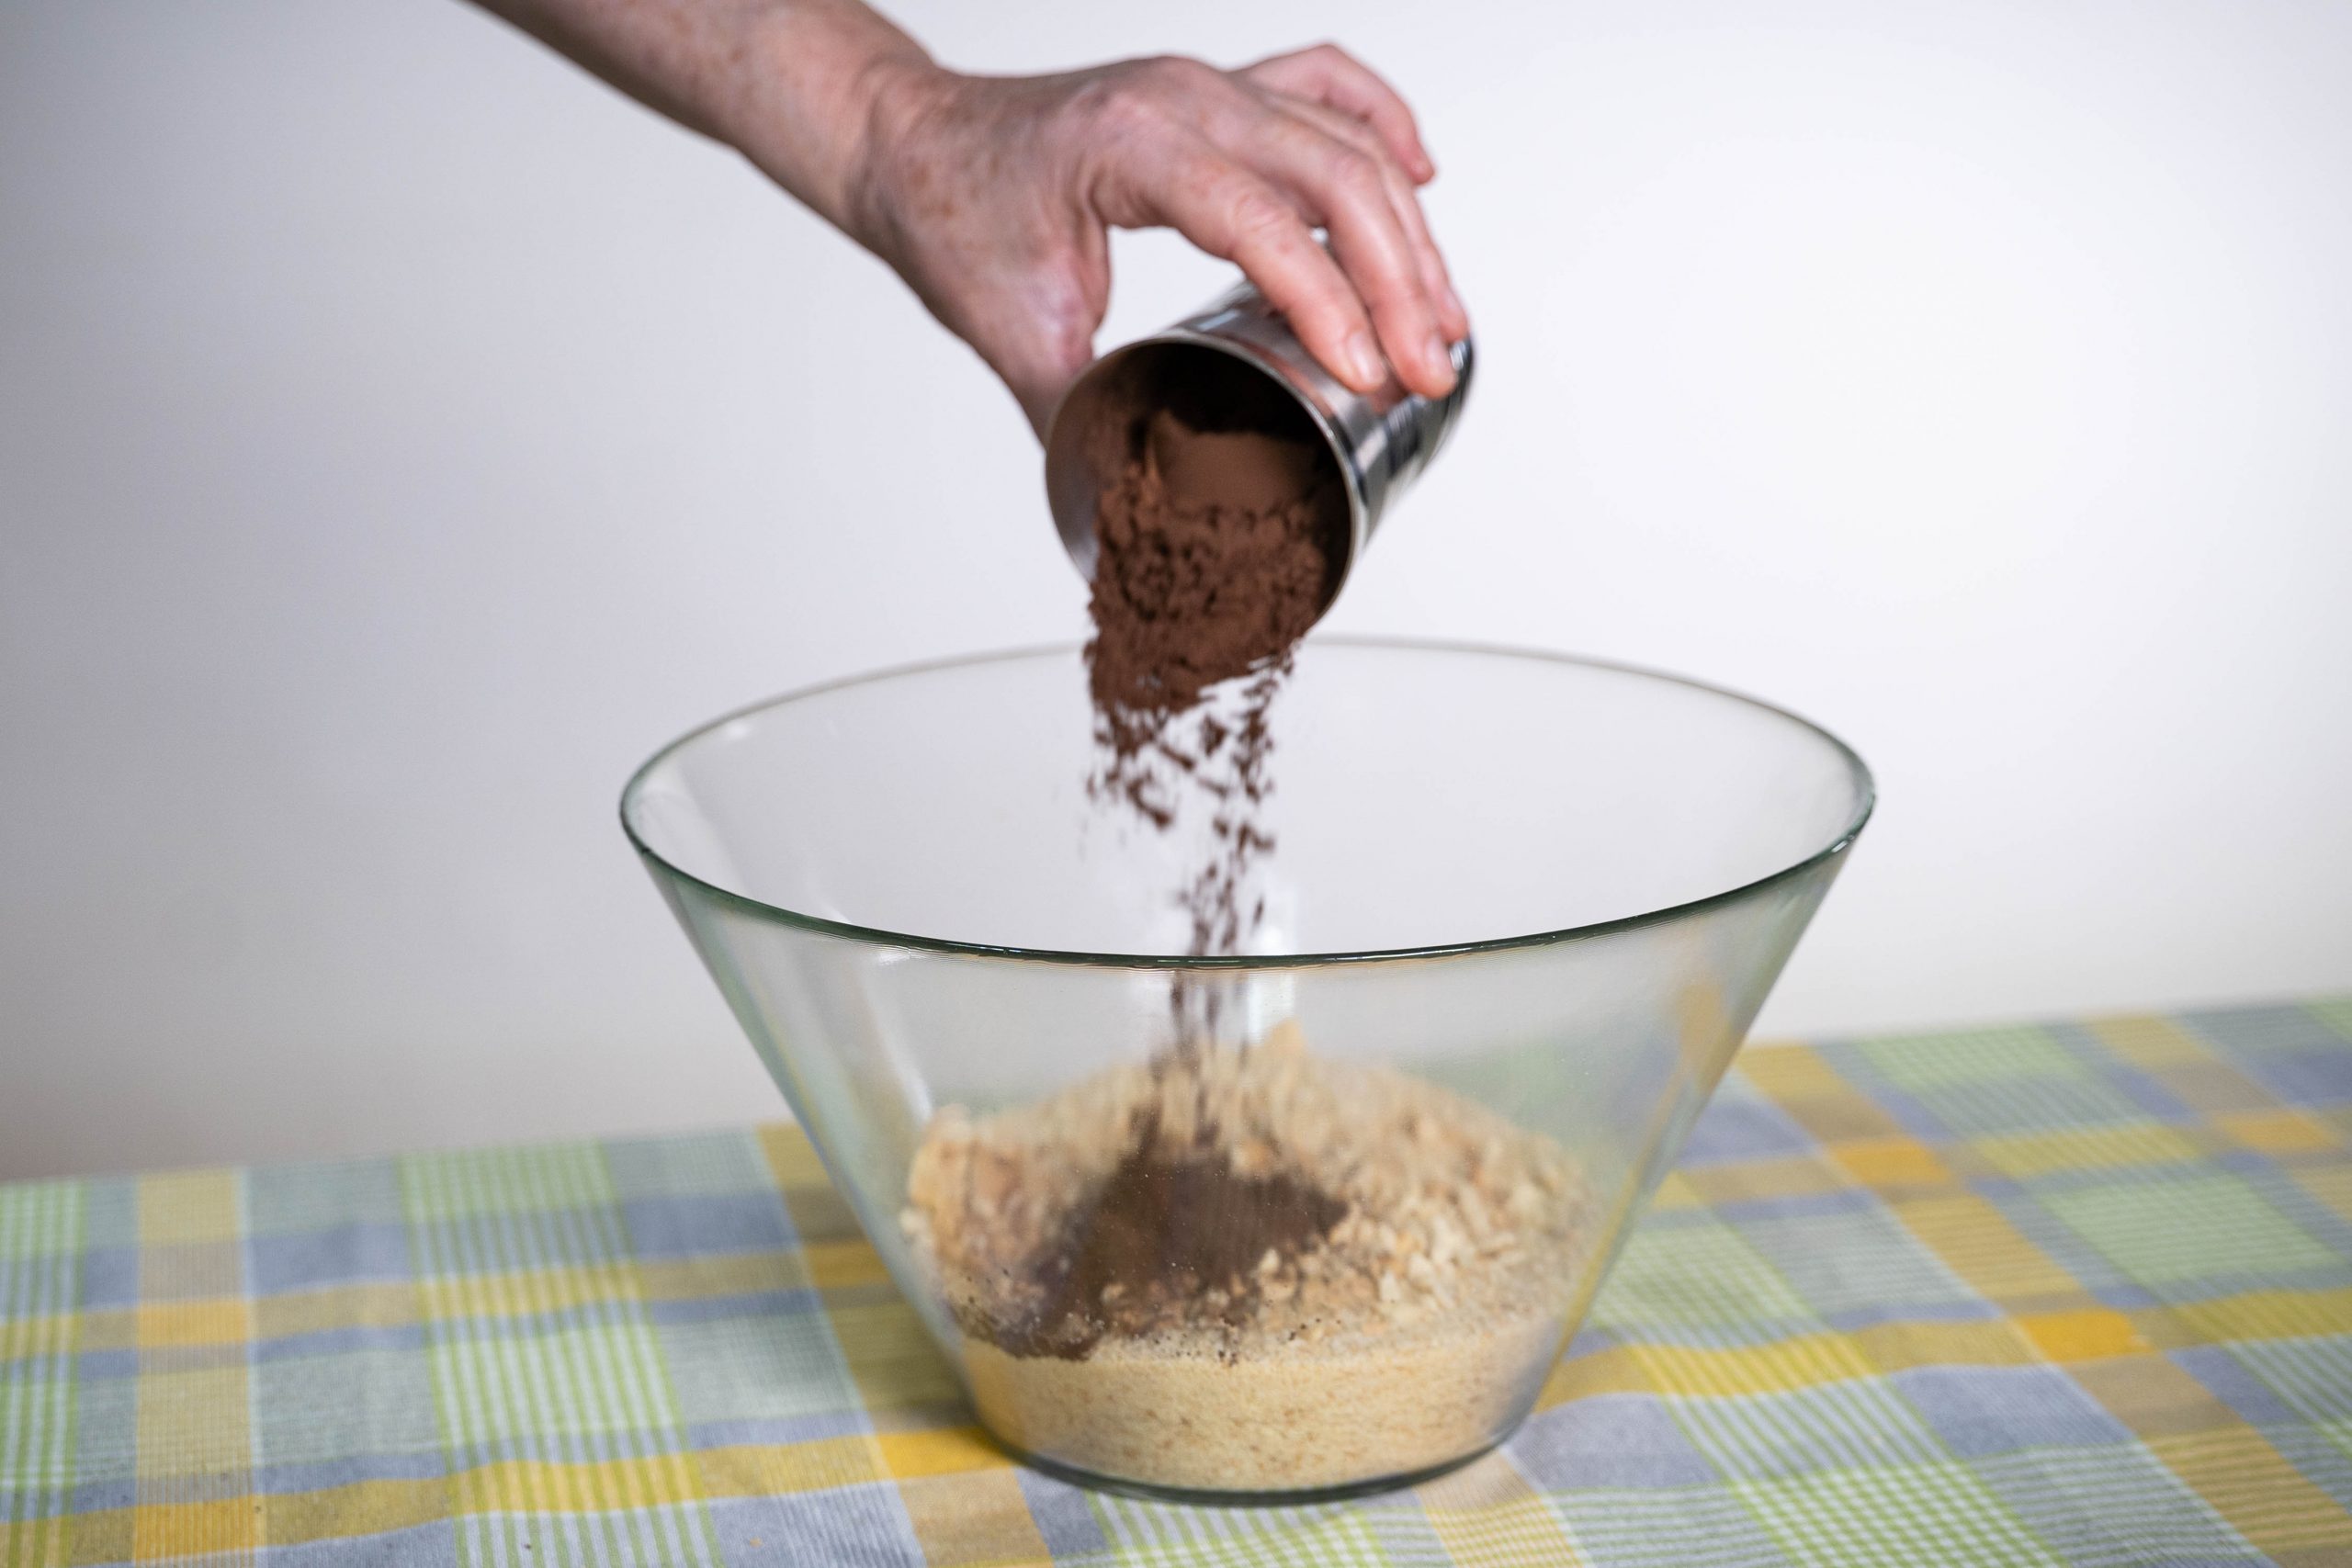 .יד שופכת קקאו מכוס לתוך קערה עם תערובת להכנת כדורי שוקולד